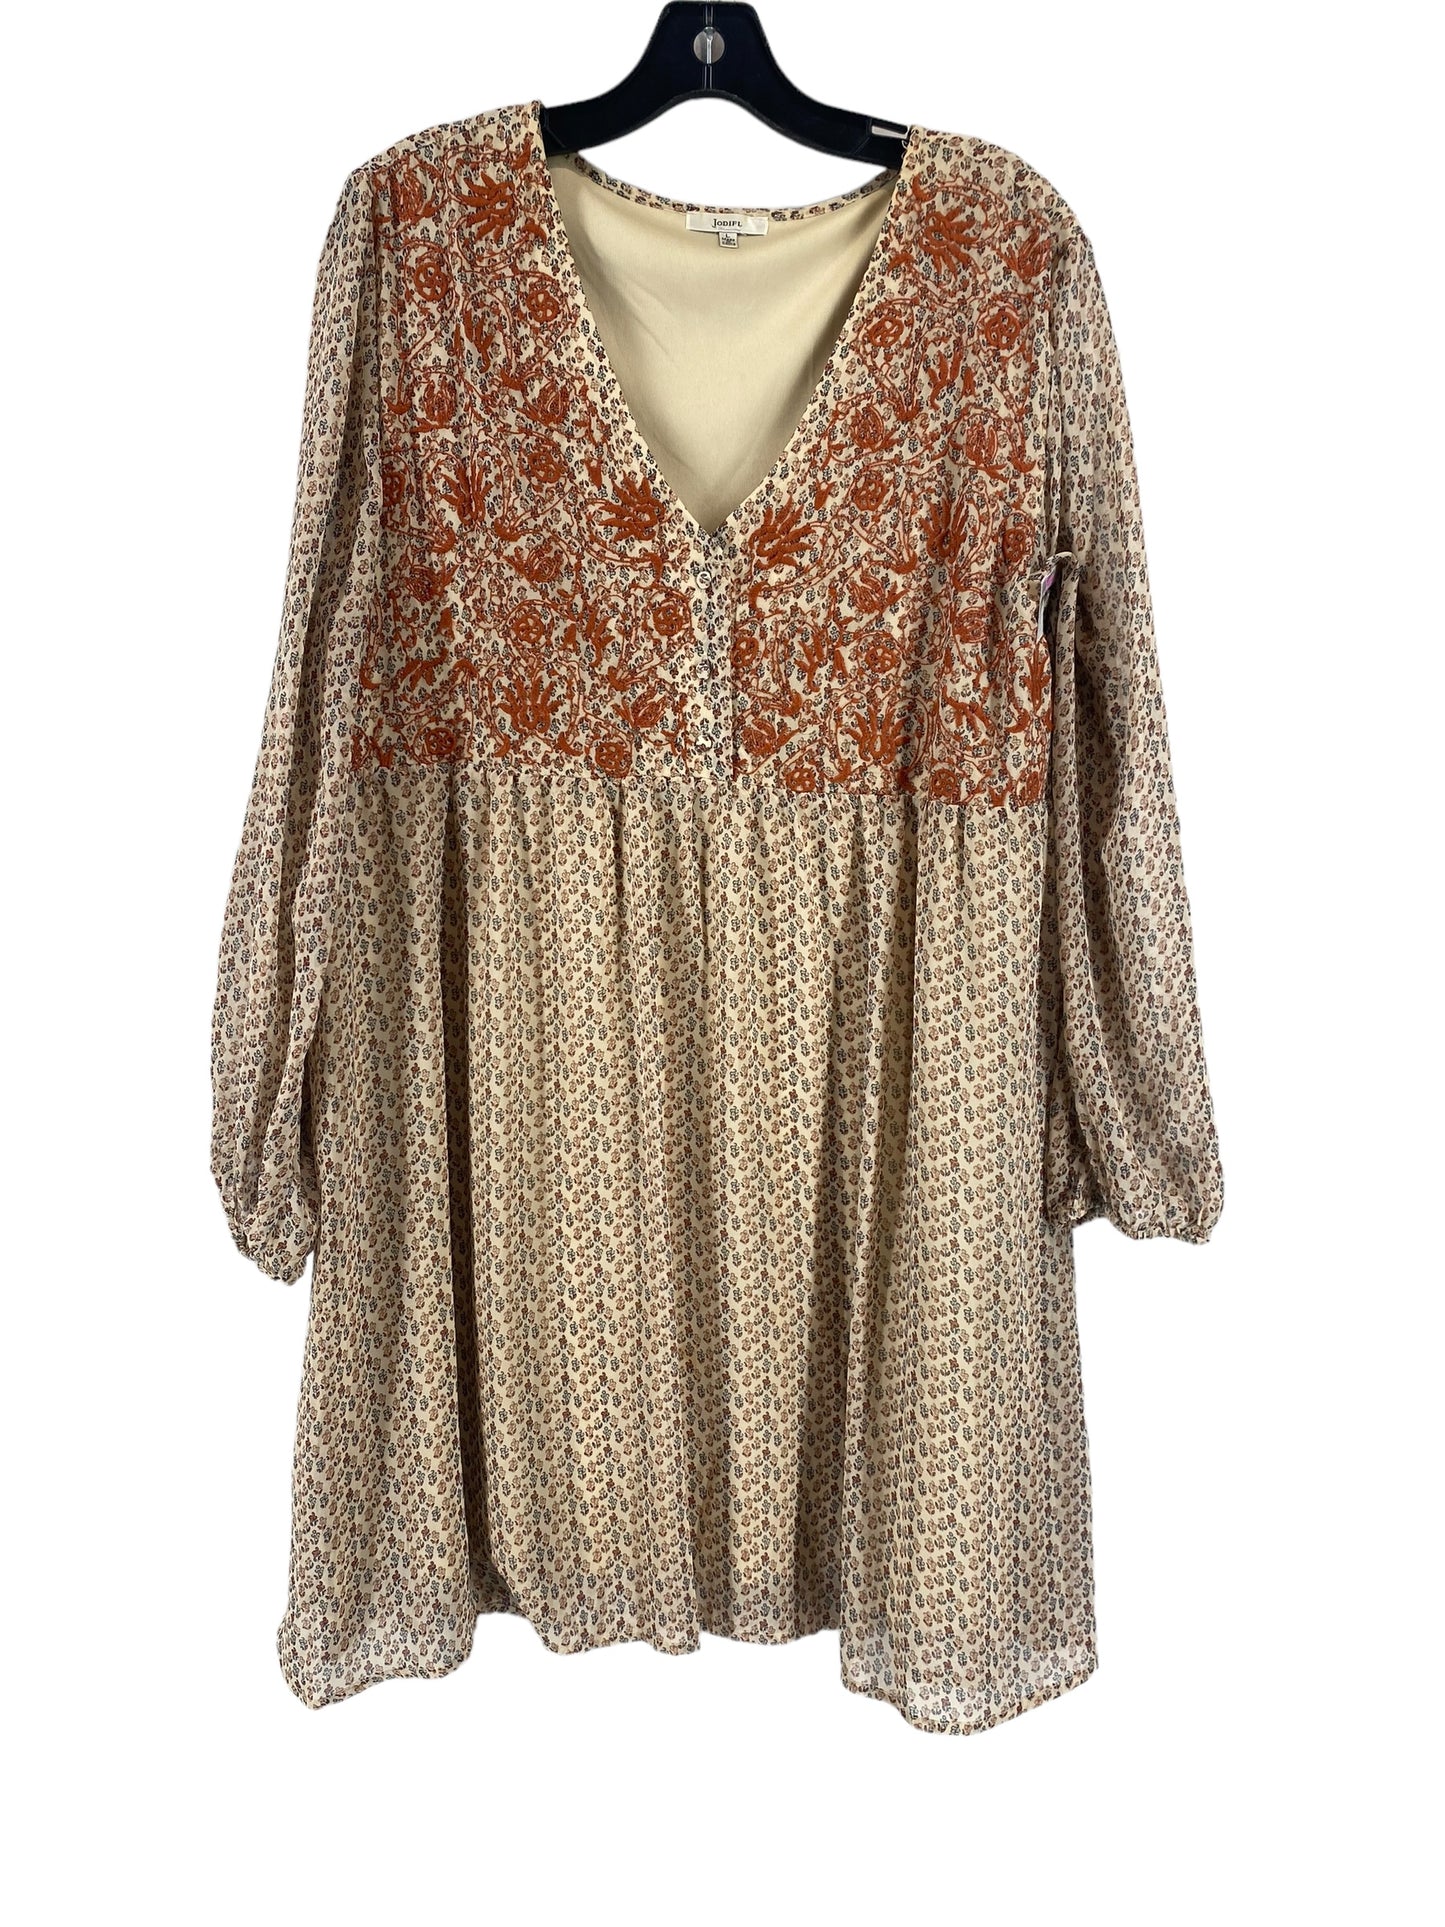 Dress Casual Midi By Jodifl  Size: L